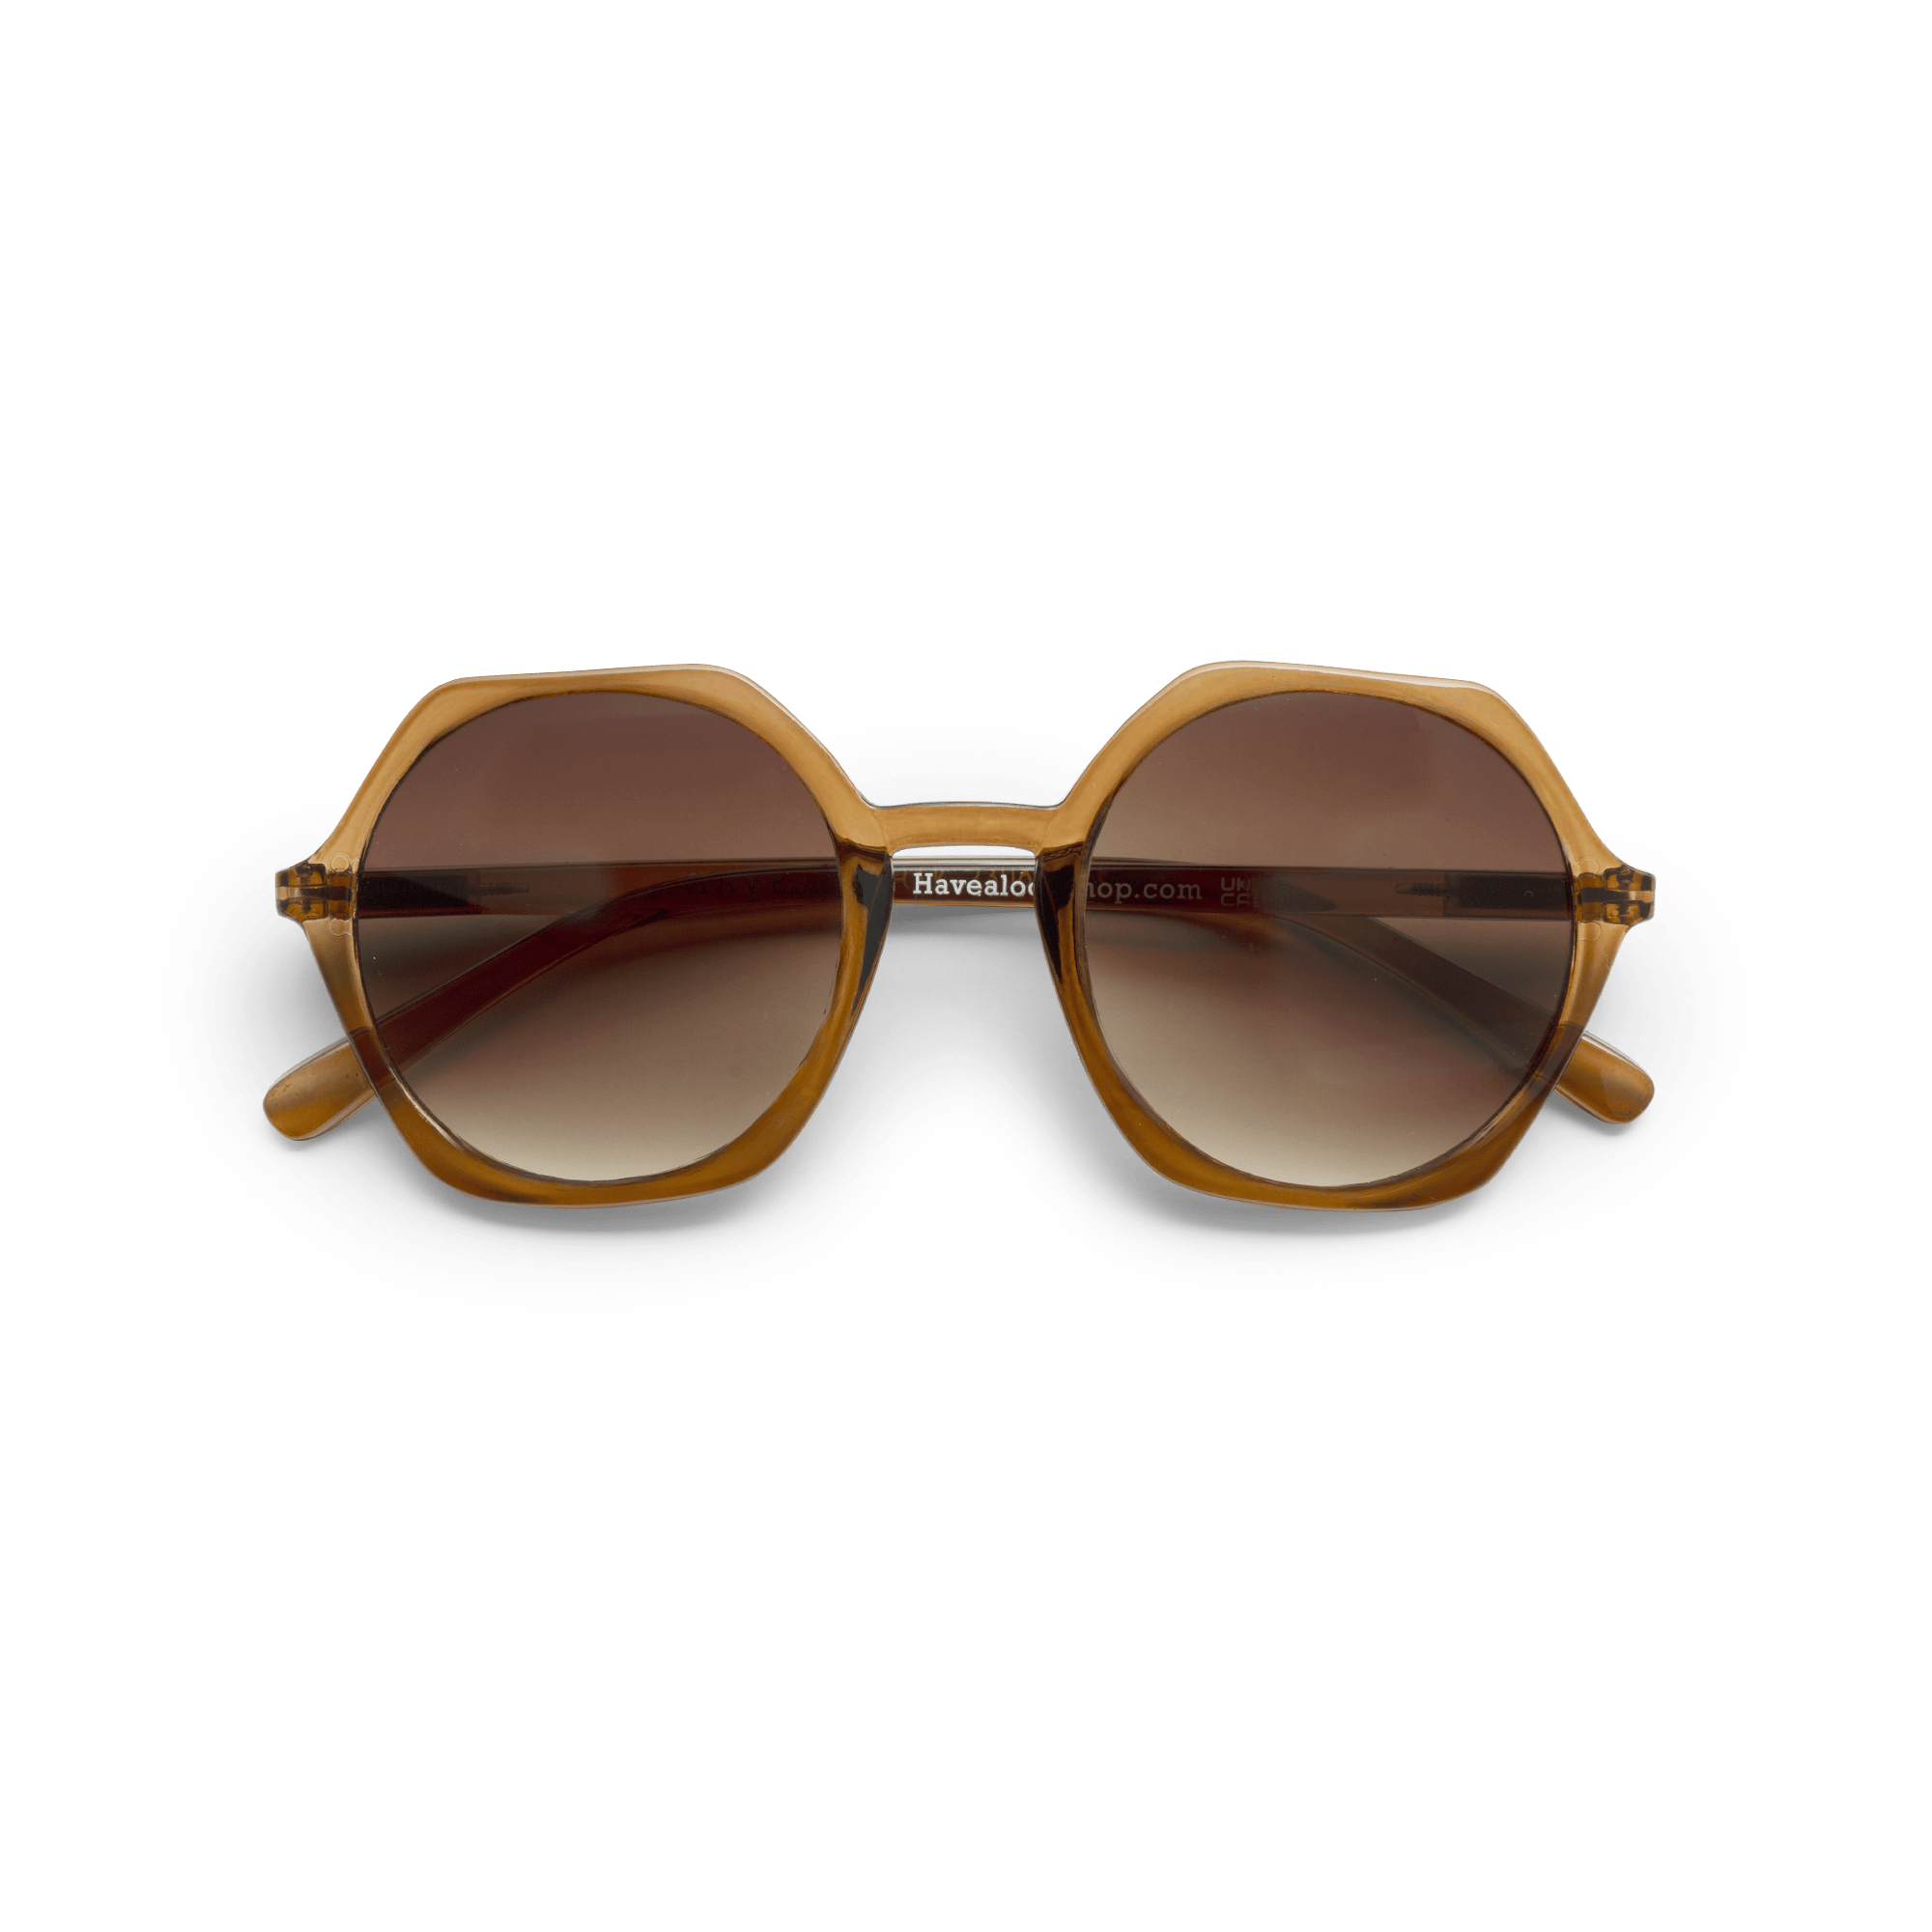 Sonnenbrillen Edgy - brown aus Have A Look